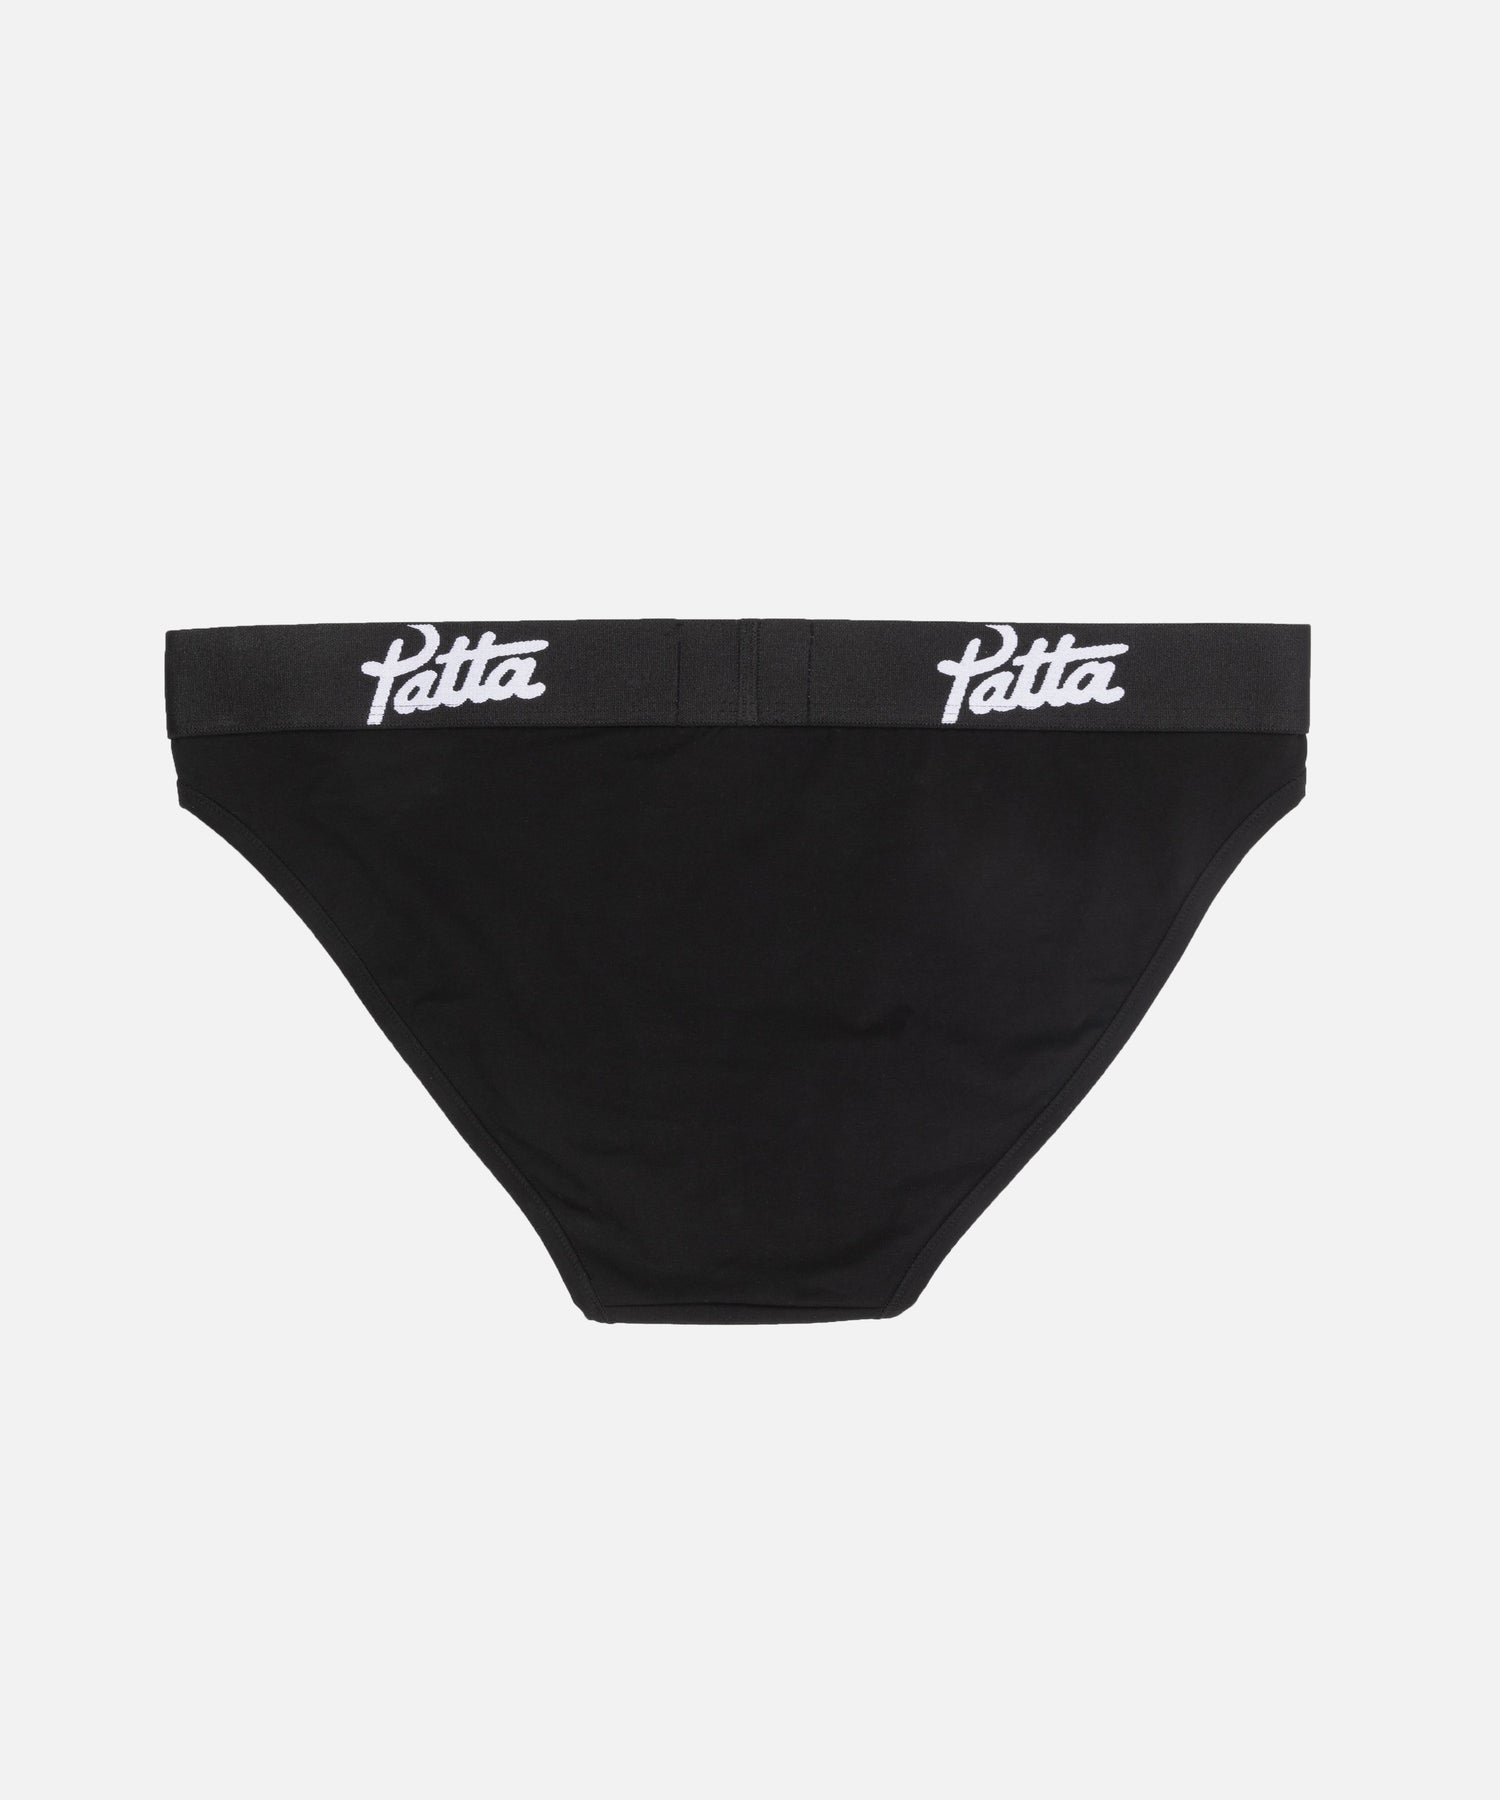 Patta Underwear Women Brief (Black)